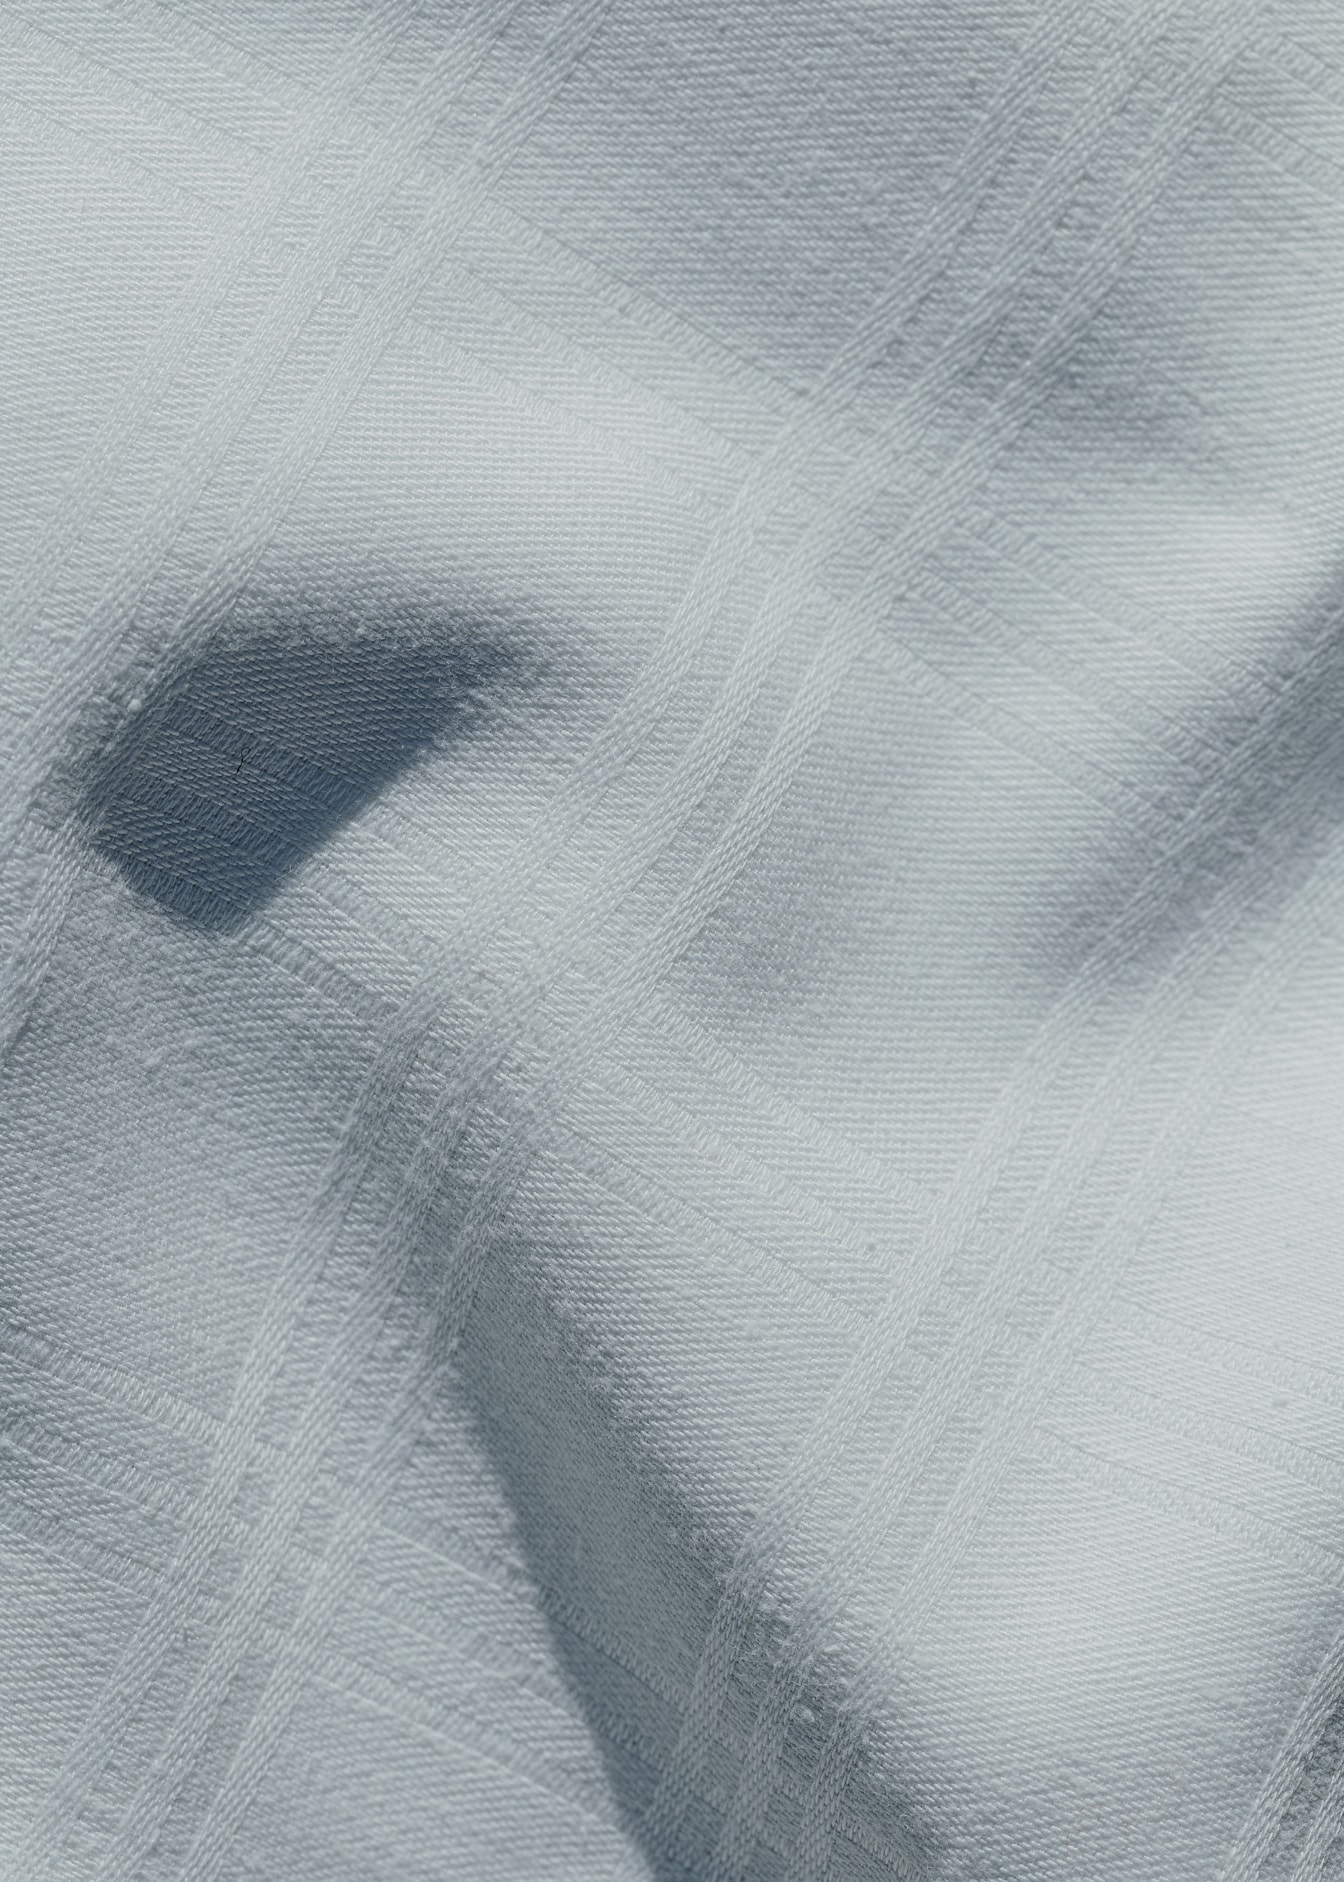 Текстура белой хлопчатобумажной ткани с прямоугольным геометрическим рисунком